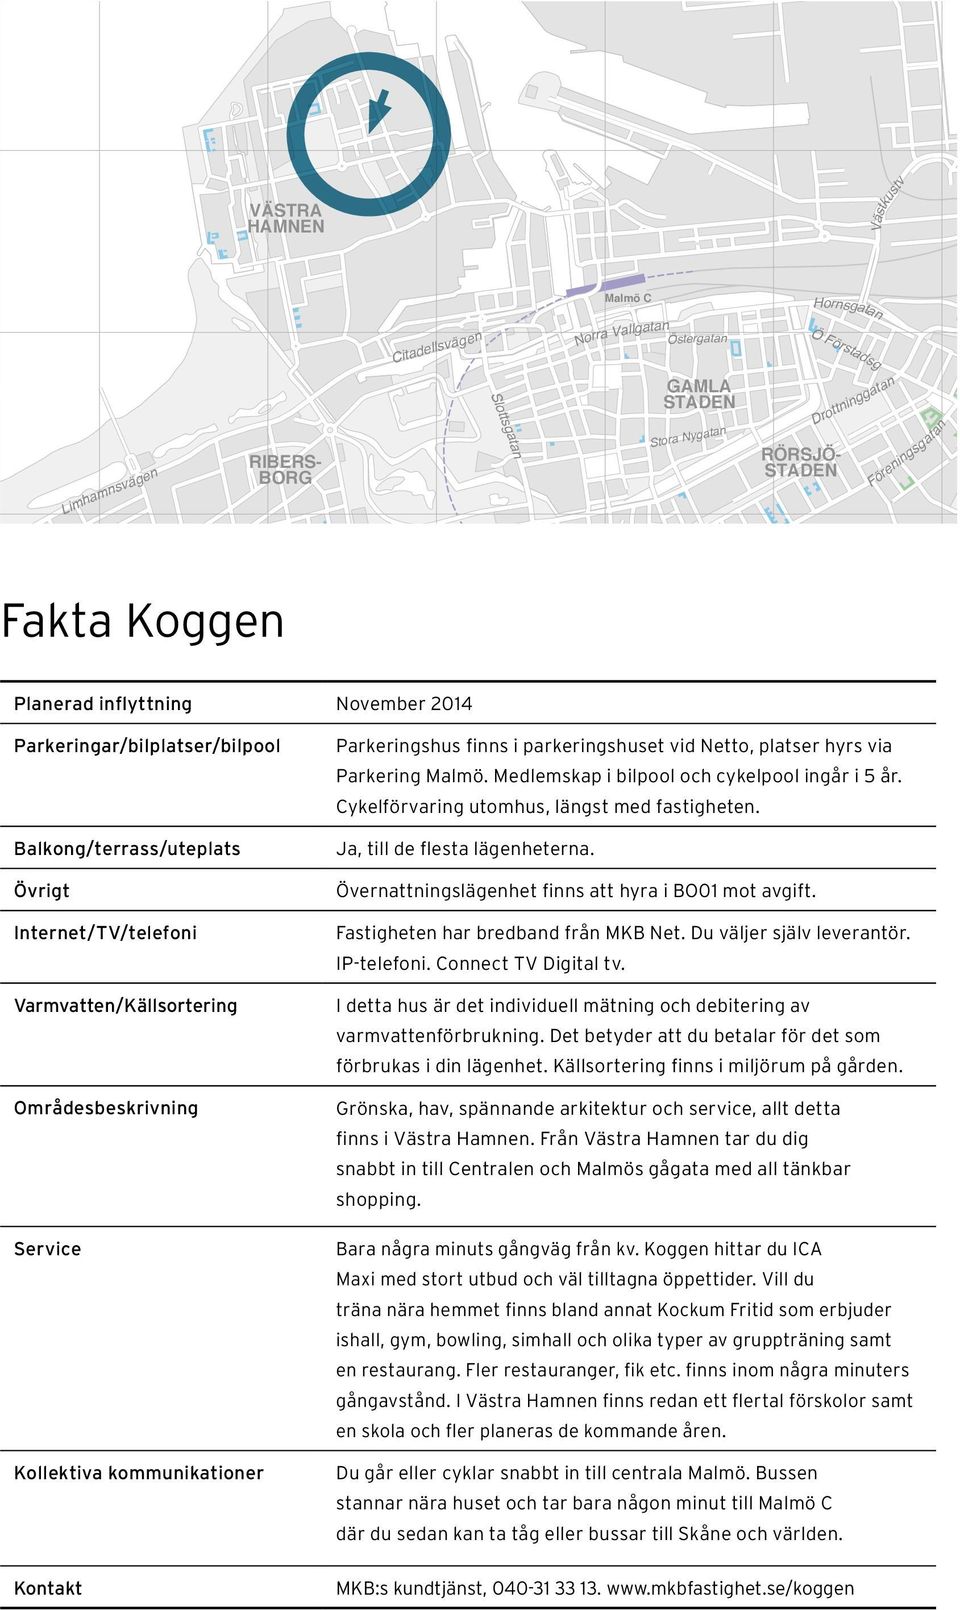 Station Triangeln DAMMFRI Parkeringar/bilplatser/bilpool Parkeringshus finns i parkeringshuset vid Netto, MÖLLEVÅNEN platser hyrs via MELLANHEDEN Parkering Malmö.